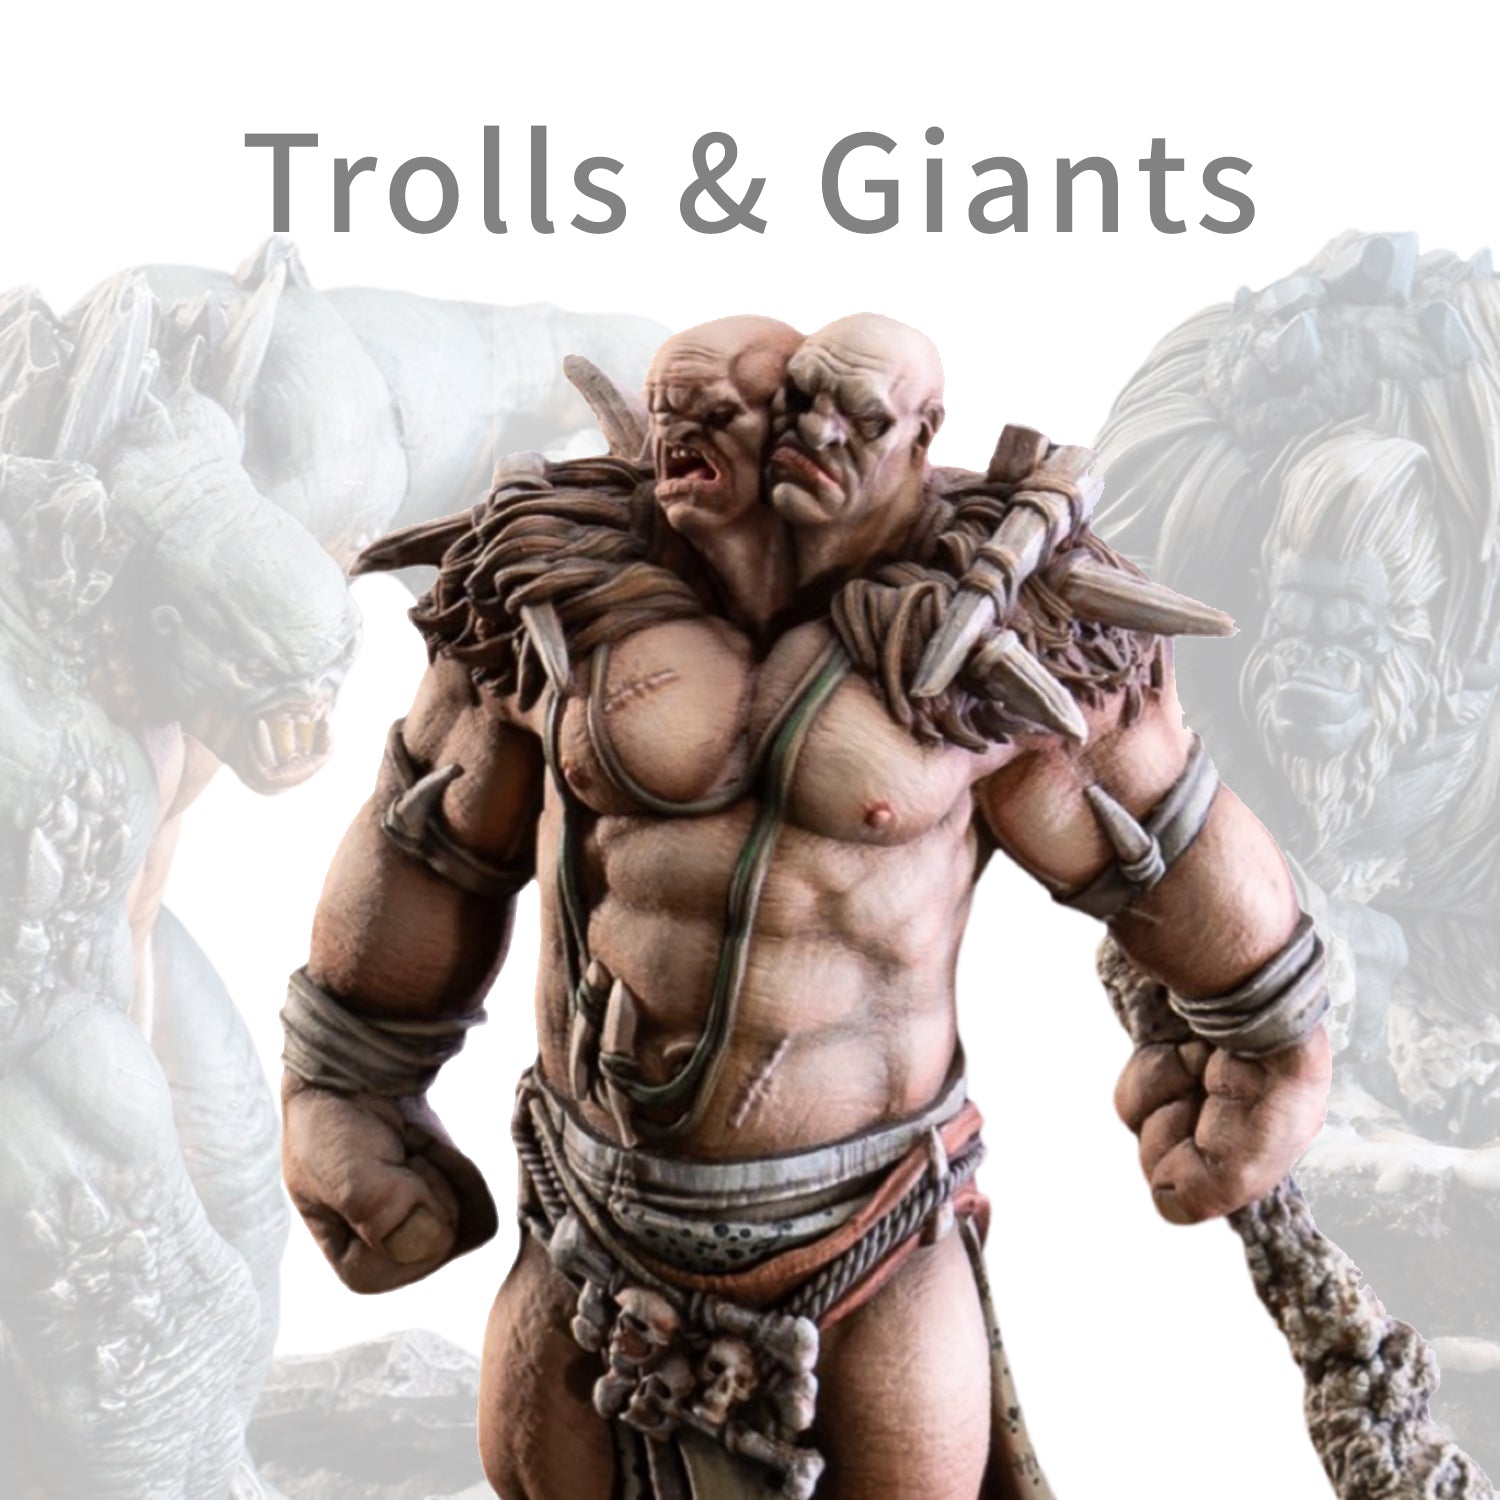 Trolls and Giants